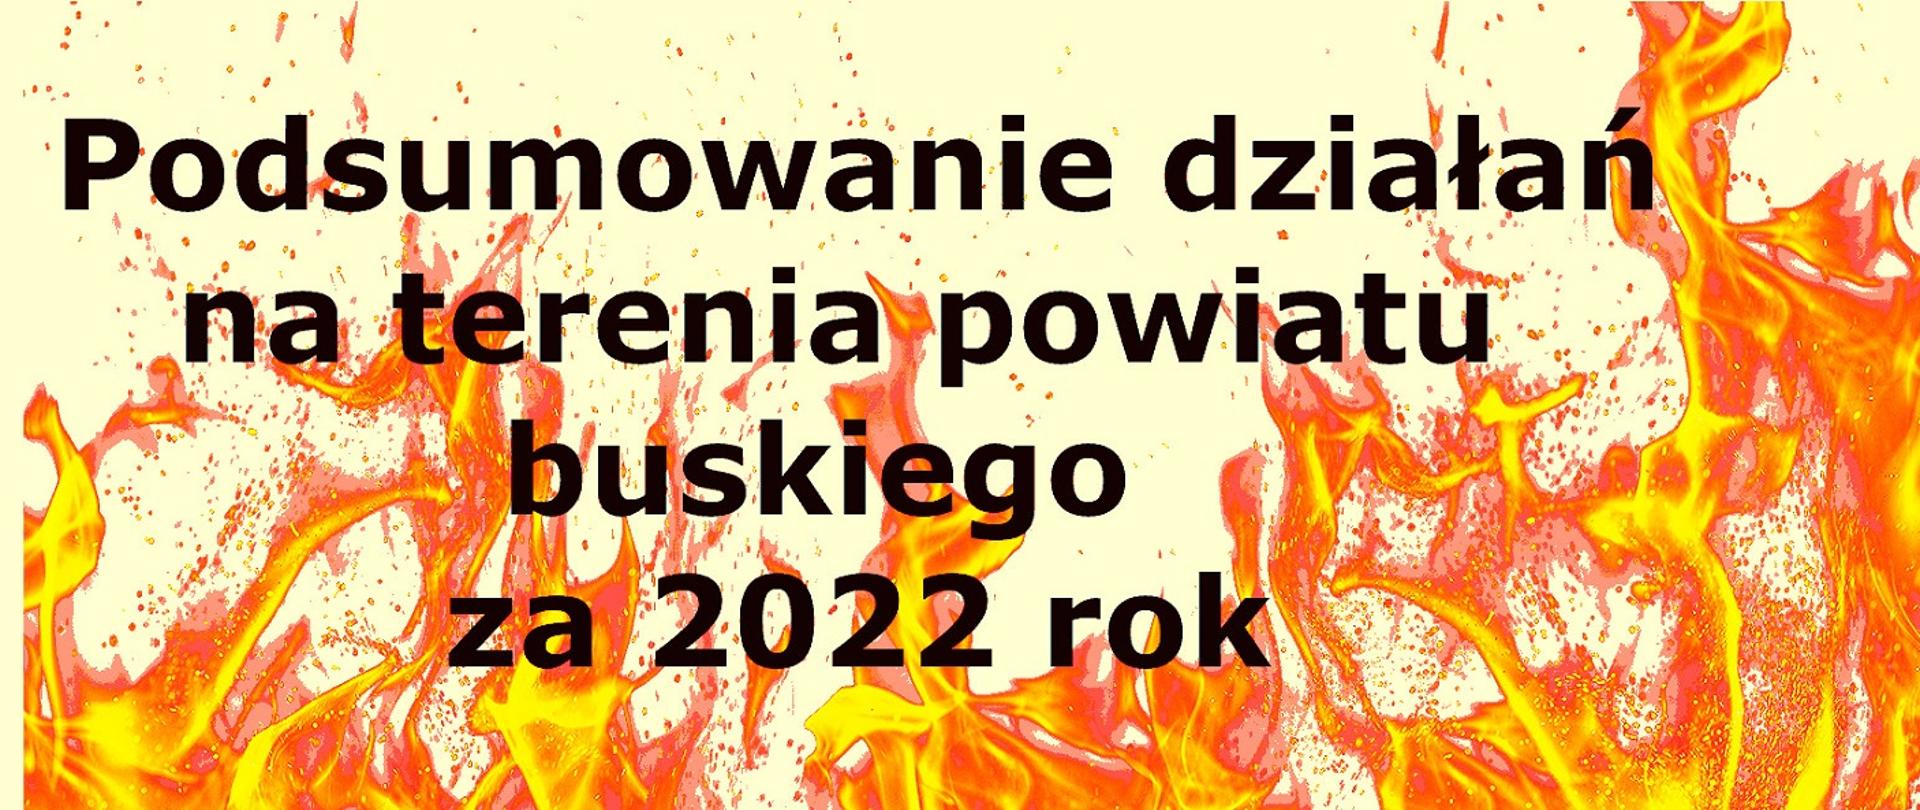 Podsumowanie 2022 roku opatowskich strażaków